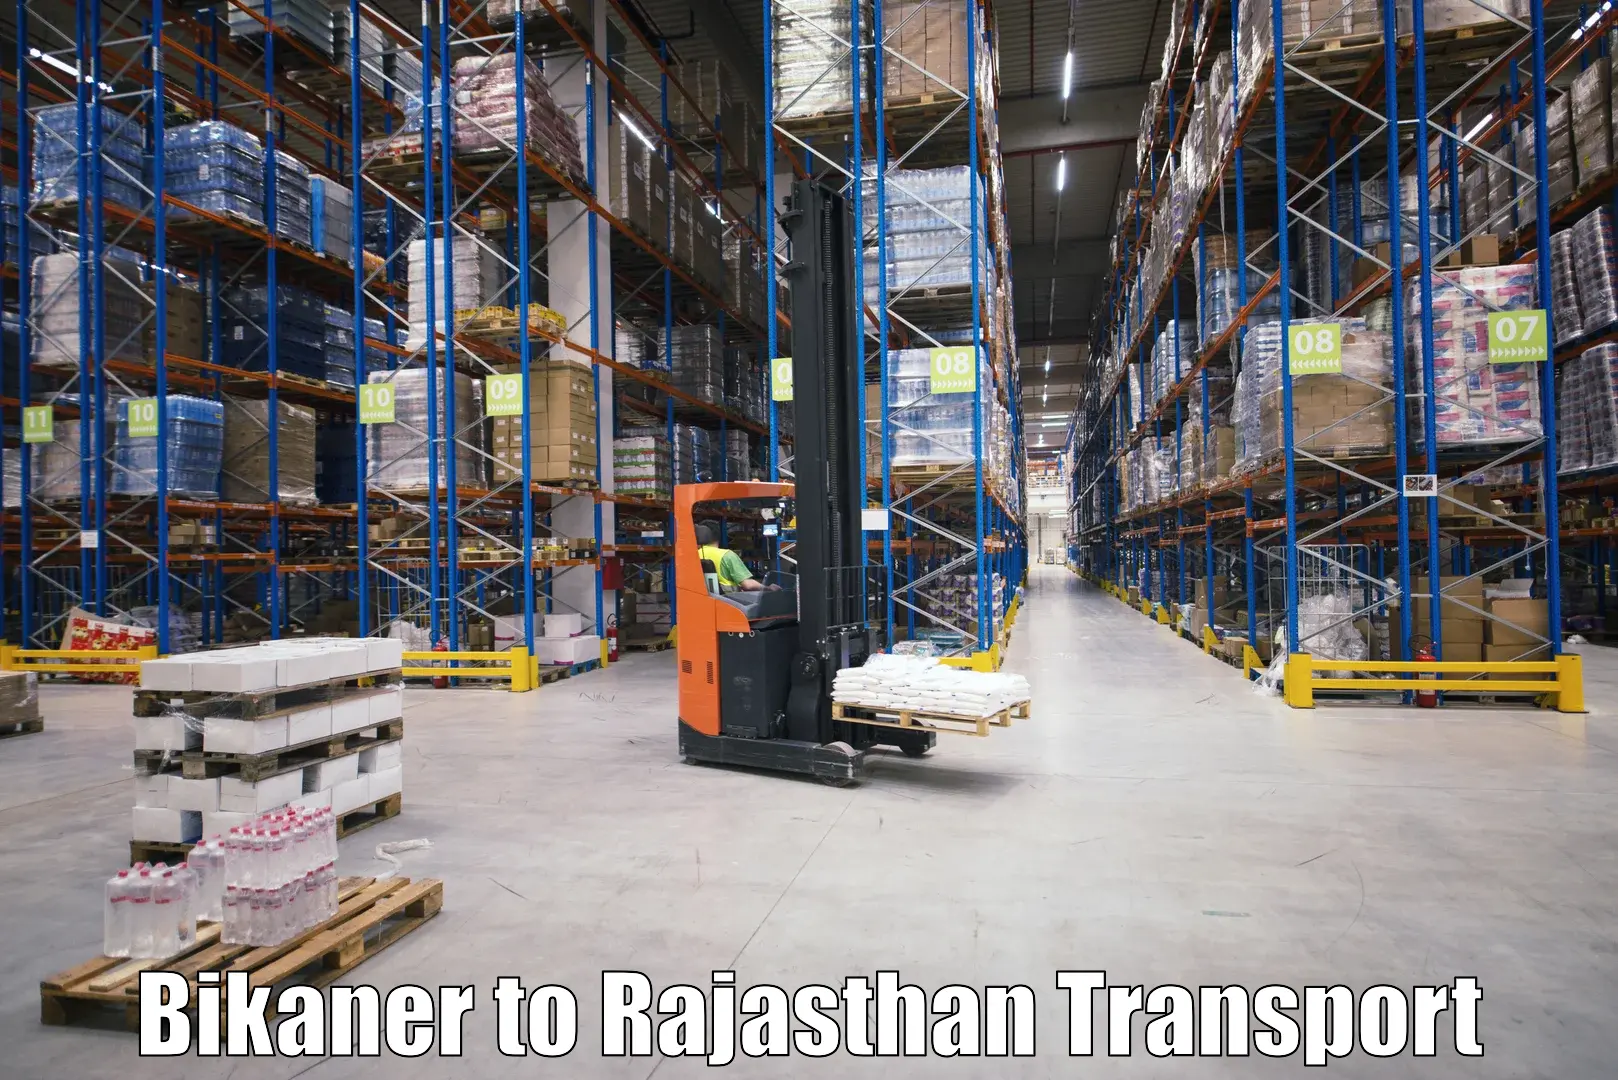 Interstate transport services Bikaner to Parbatsar